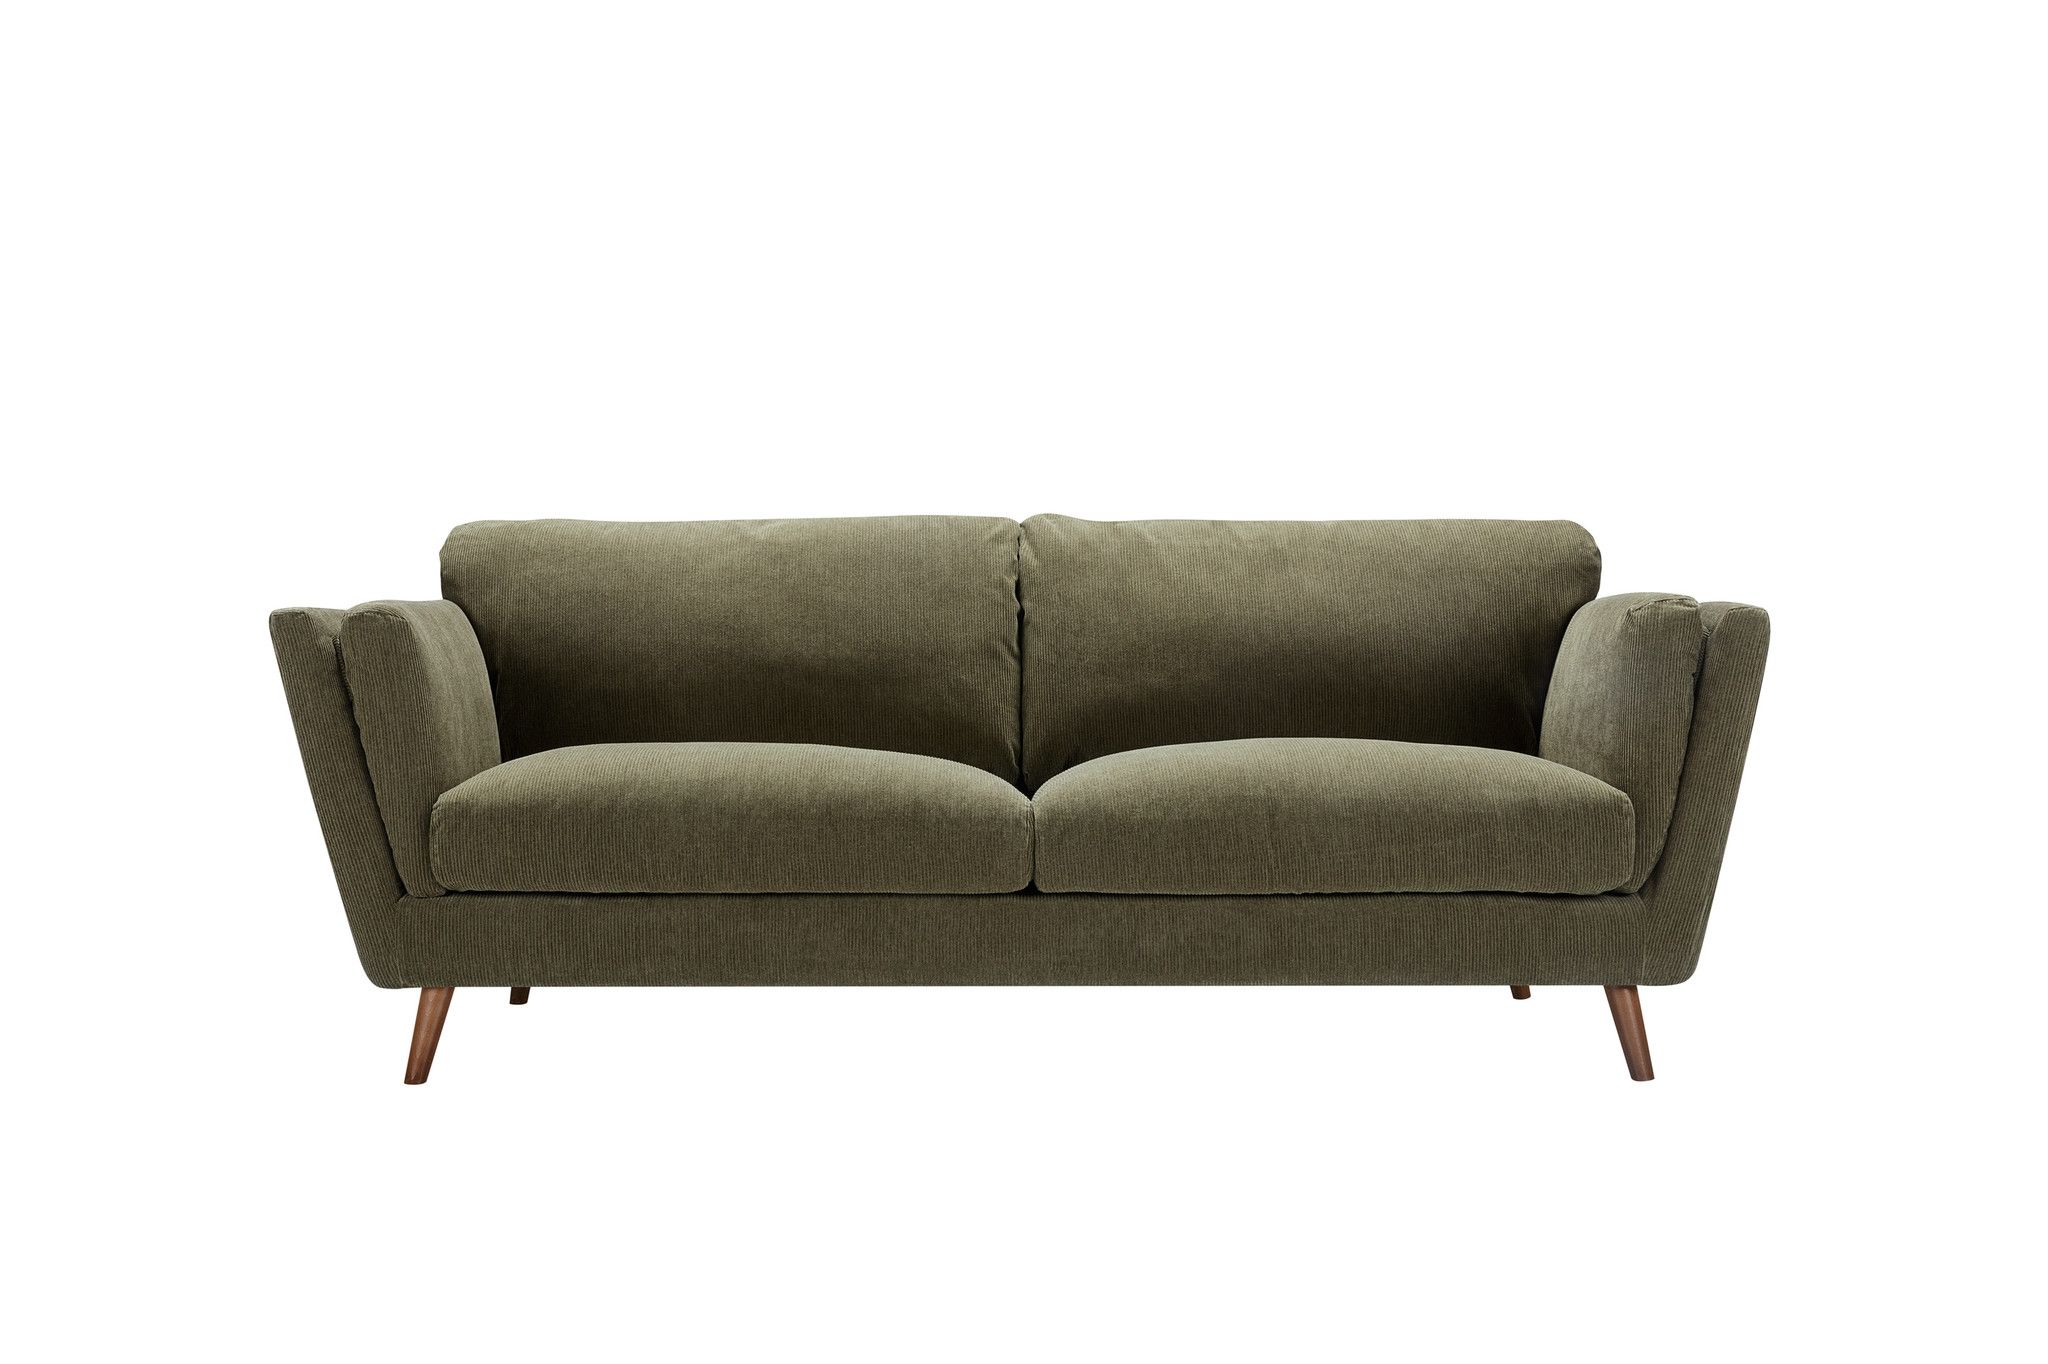 Fiore 2 Seater Sofa Bed-2038-к8-11707 Dark Green -ar